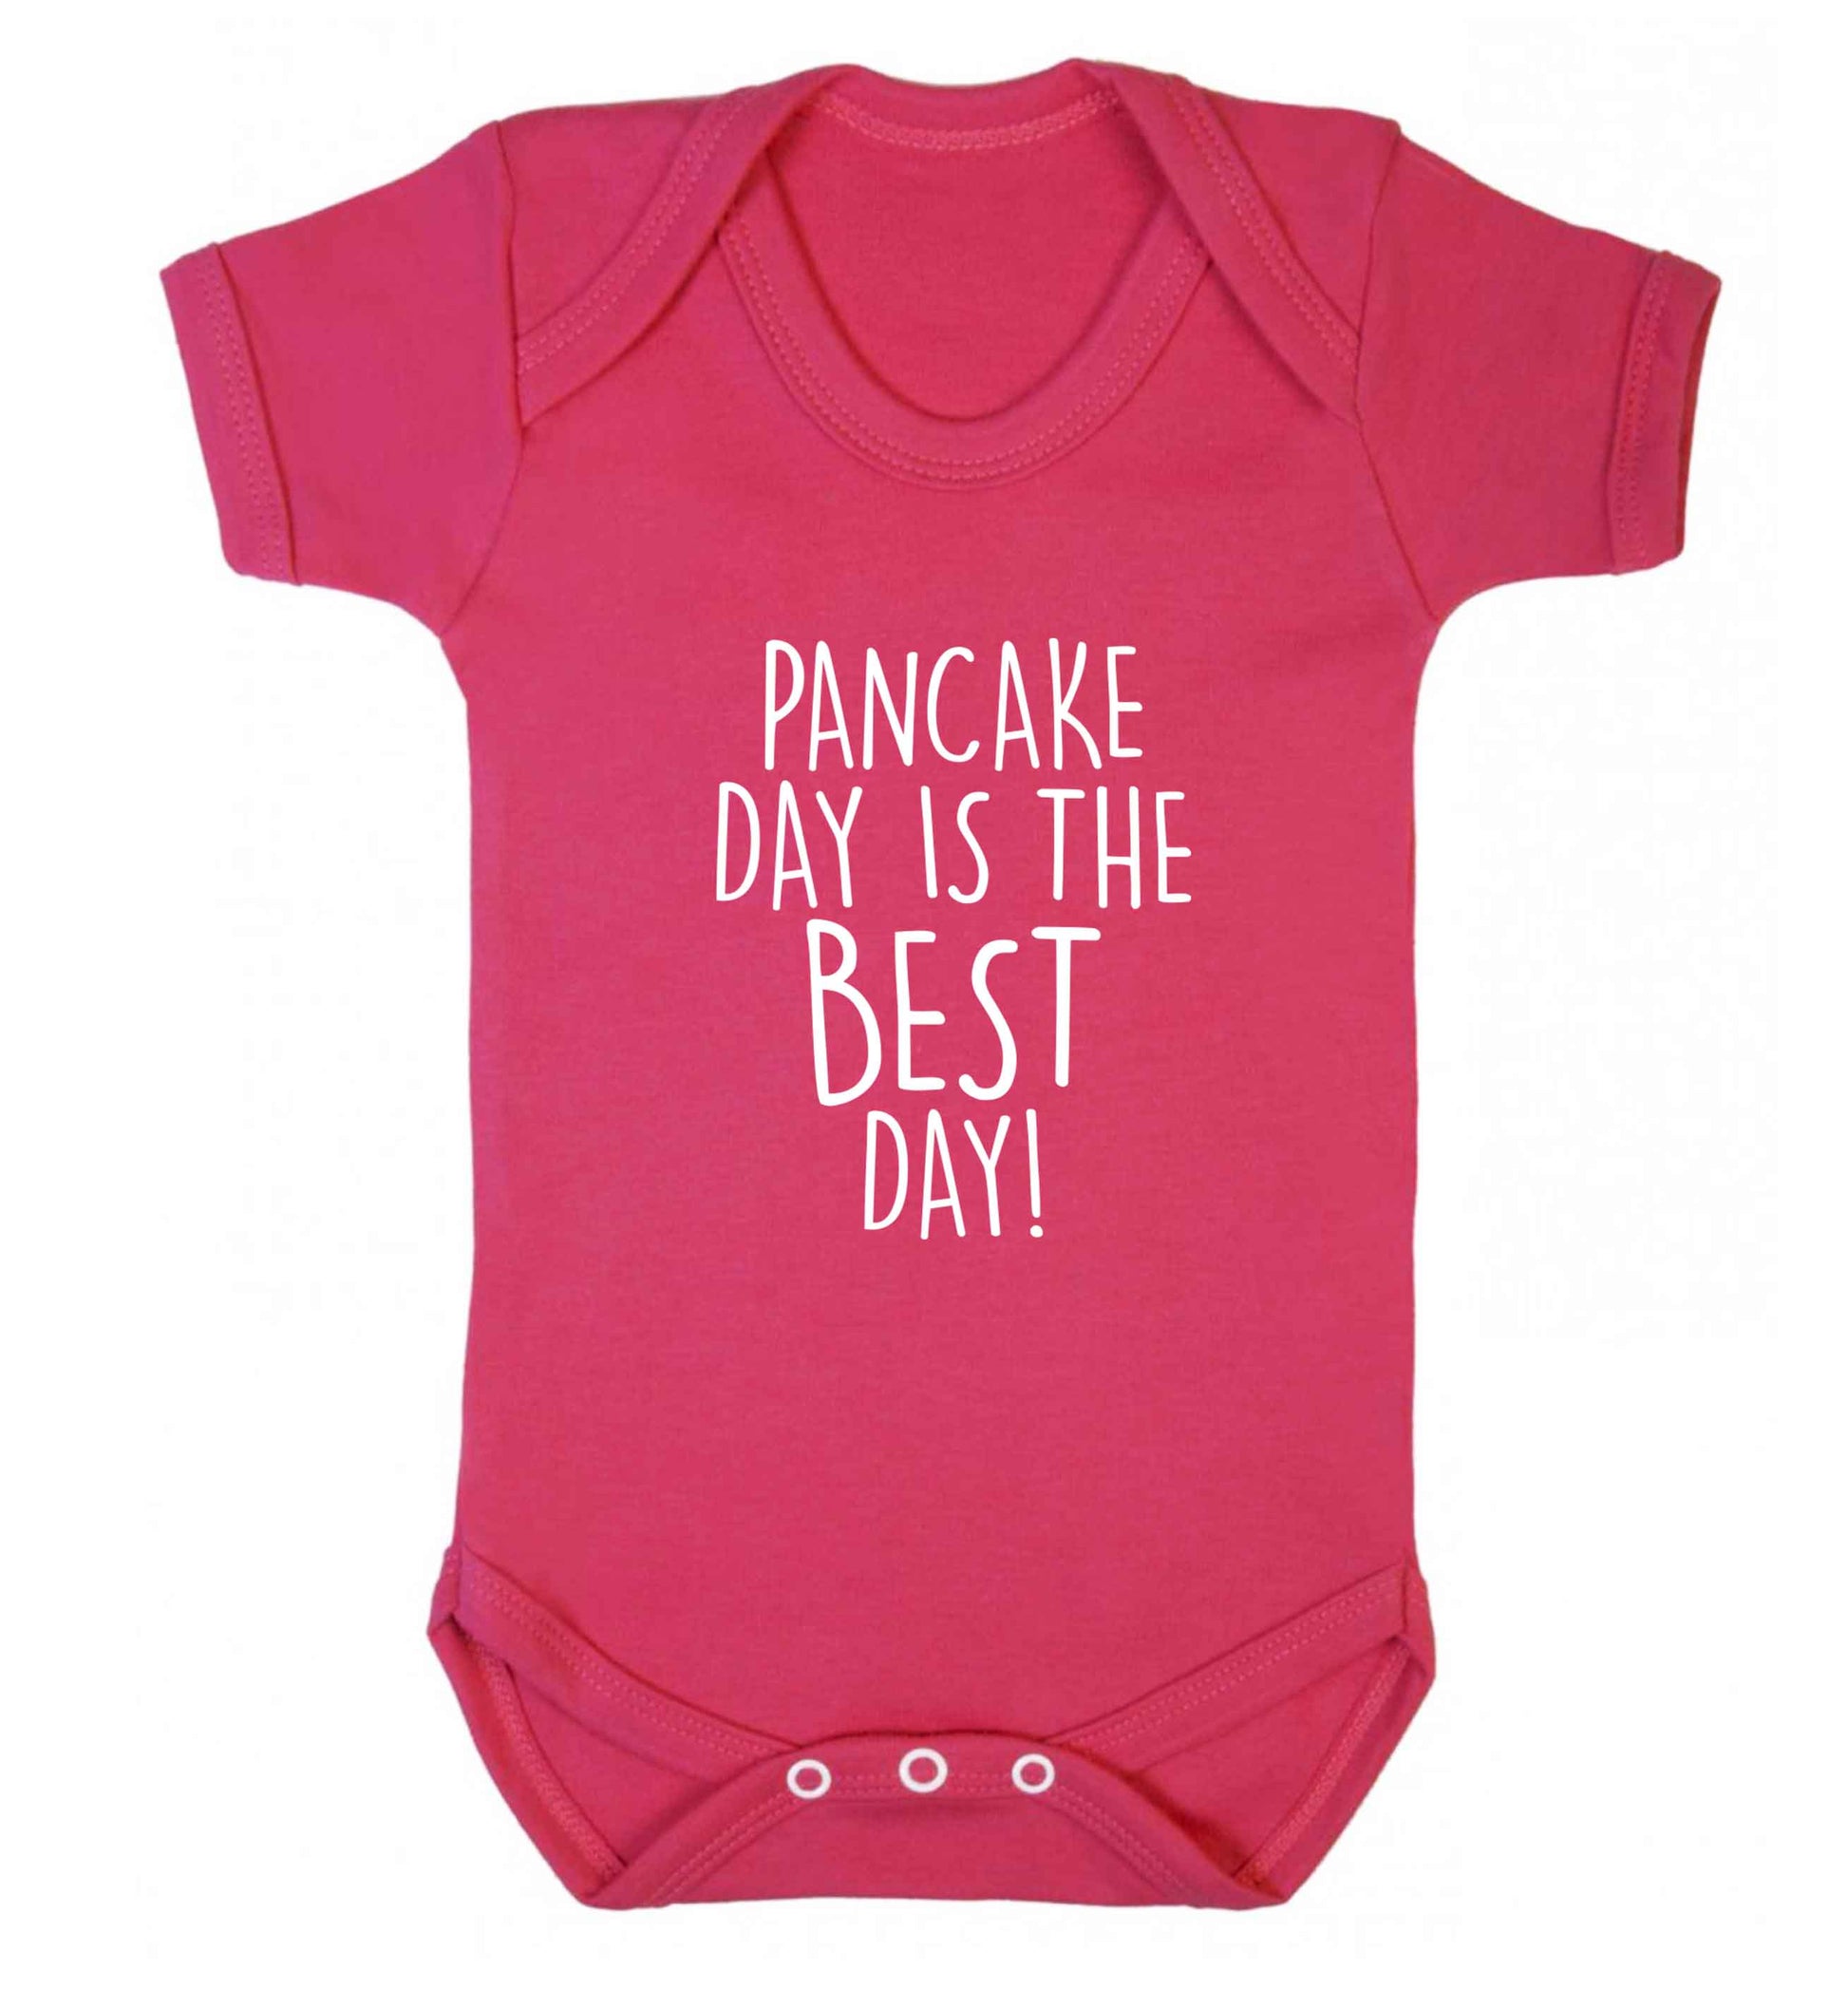 Pancake day is the best day baby vest dark pink 18-24 months